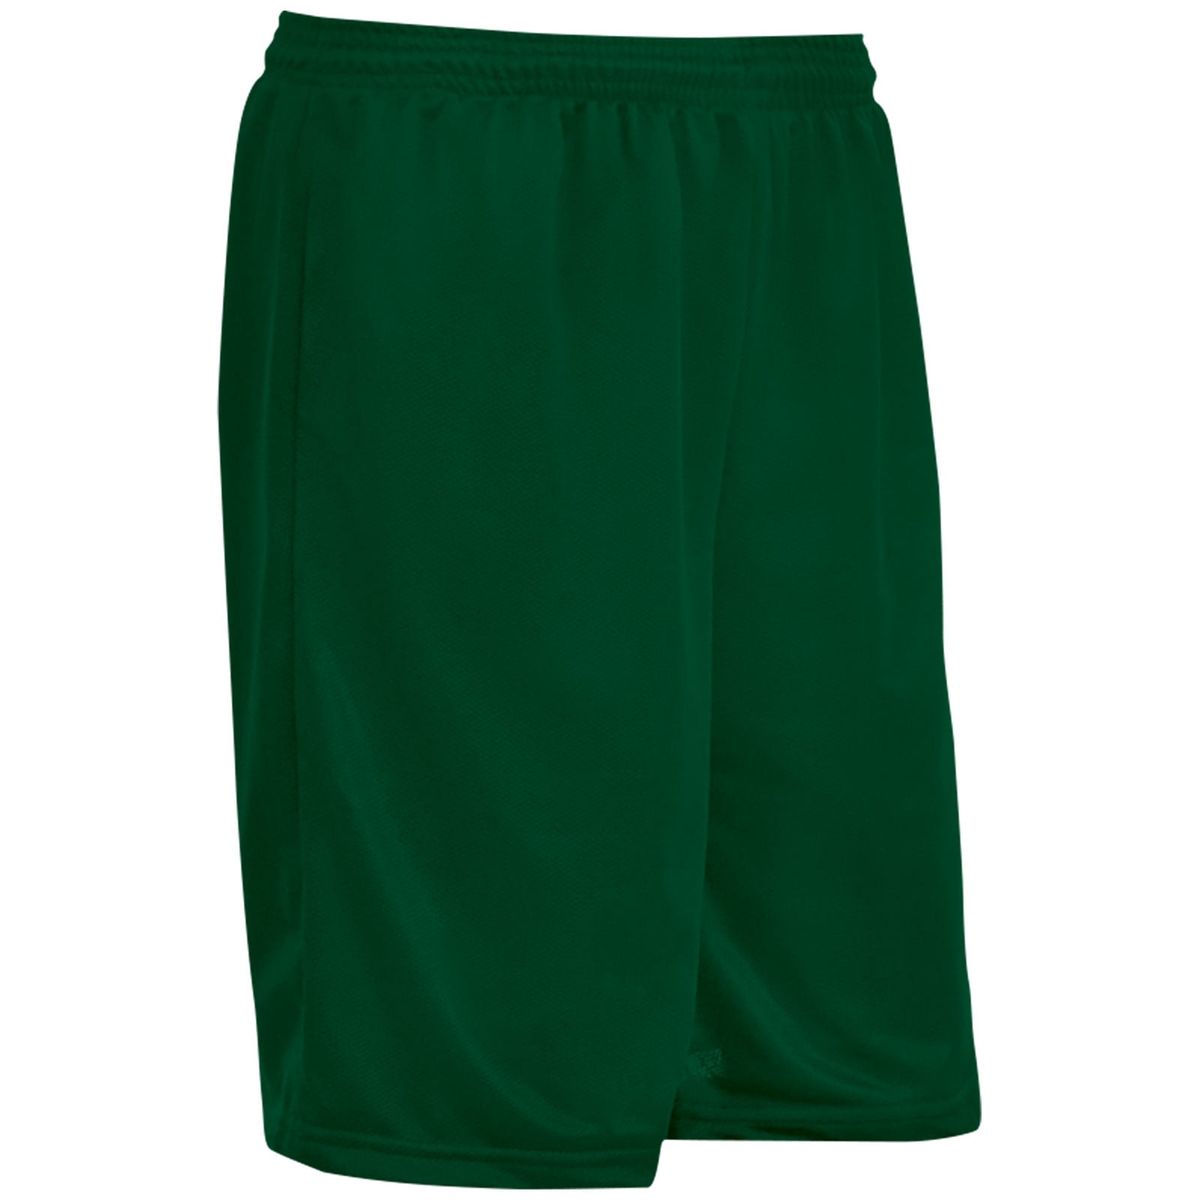 [RDY] [送料無料] CHAMPRO スポーツボス アスレチックショーツ 股下7インチ 大人用 M フォレストグリーン [楽天海外通販] | Champro Sports Boss Athletic Shorts, 7" Inseam, Adult Medium, Forest Green